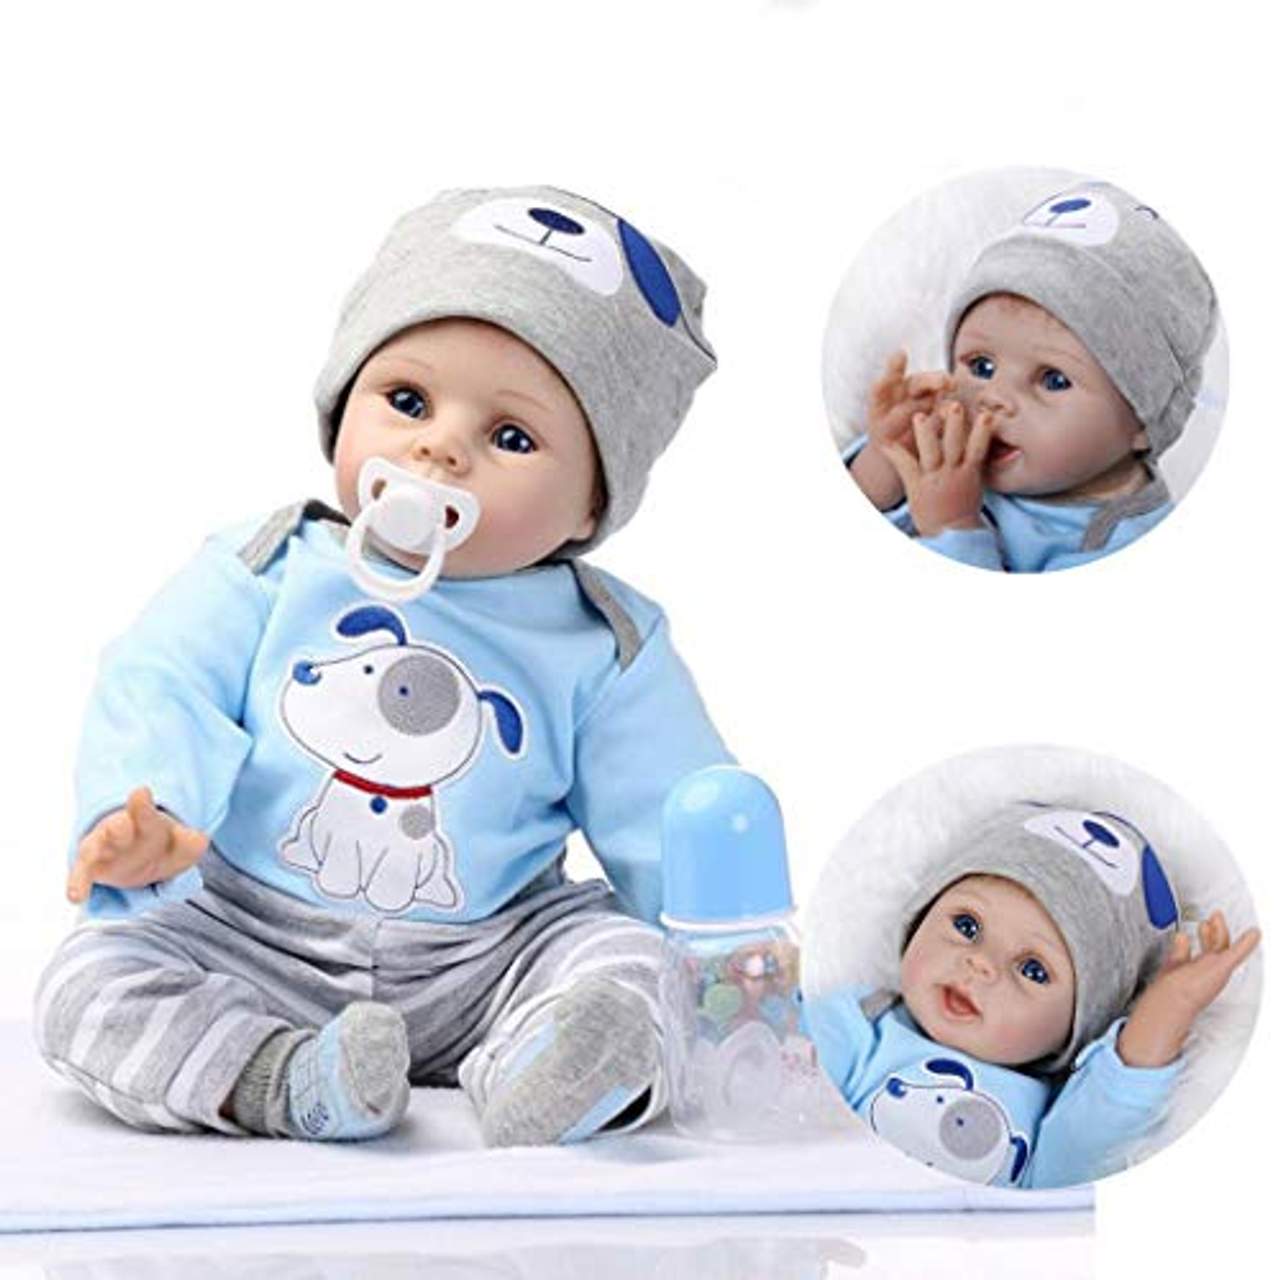 NPK Cute Rebornpuppen Lebensecht Weich Silikon Baby Reborn Puppen mit Kissen 